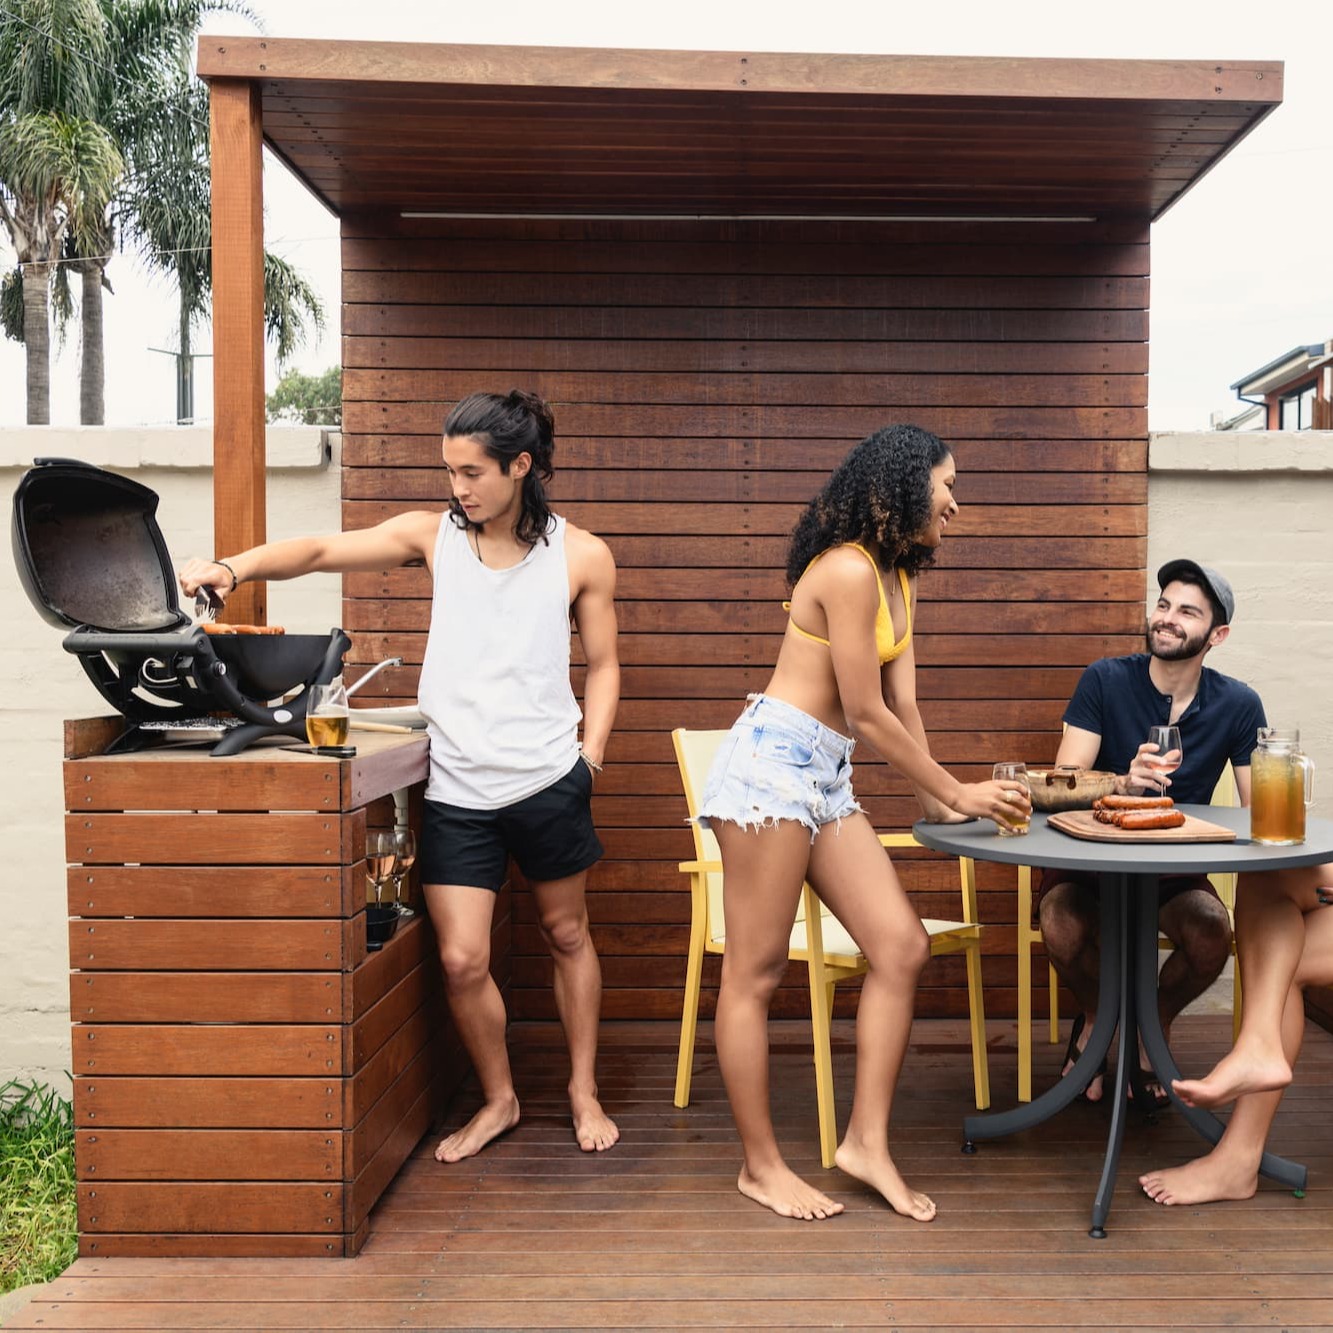 Un barbecue sur une table – Aveve